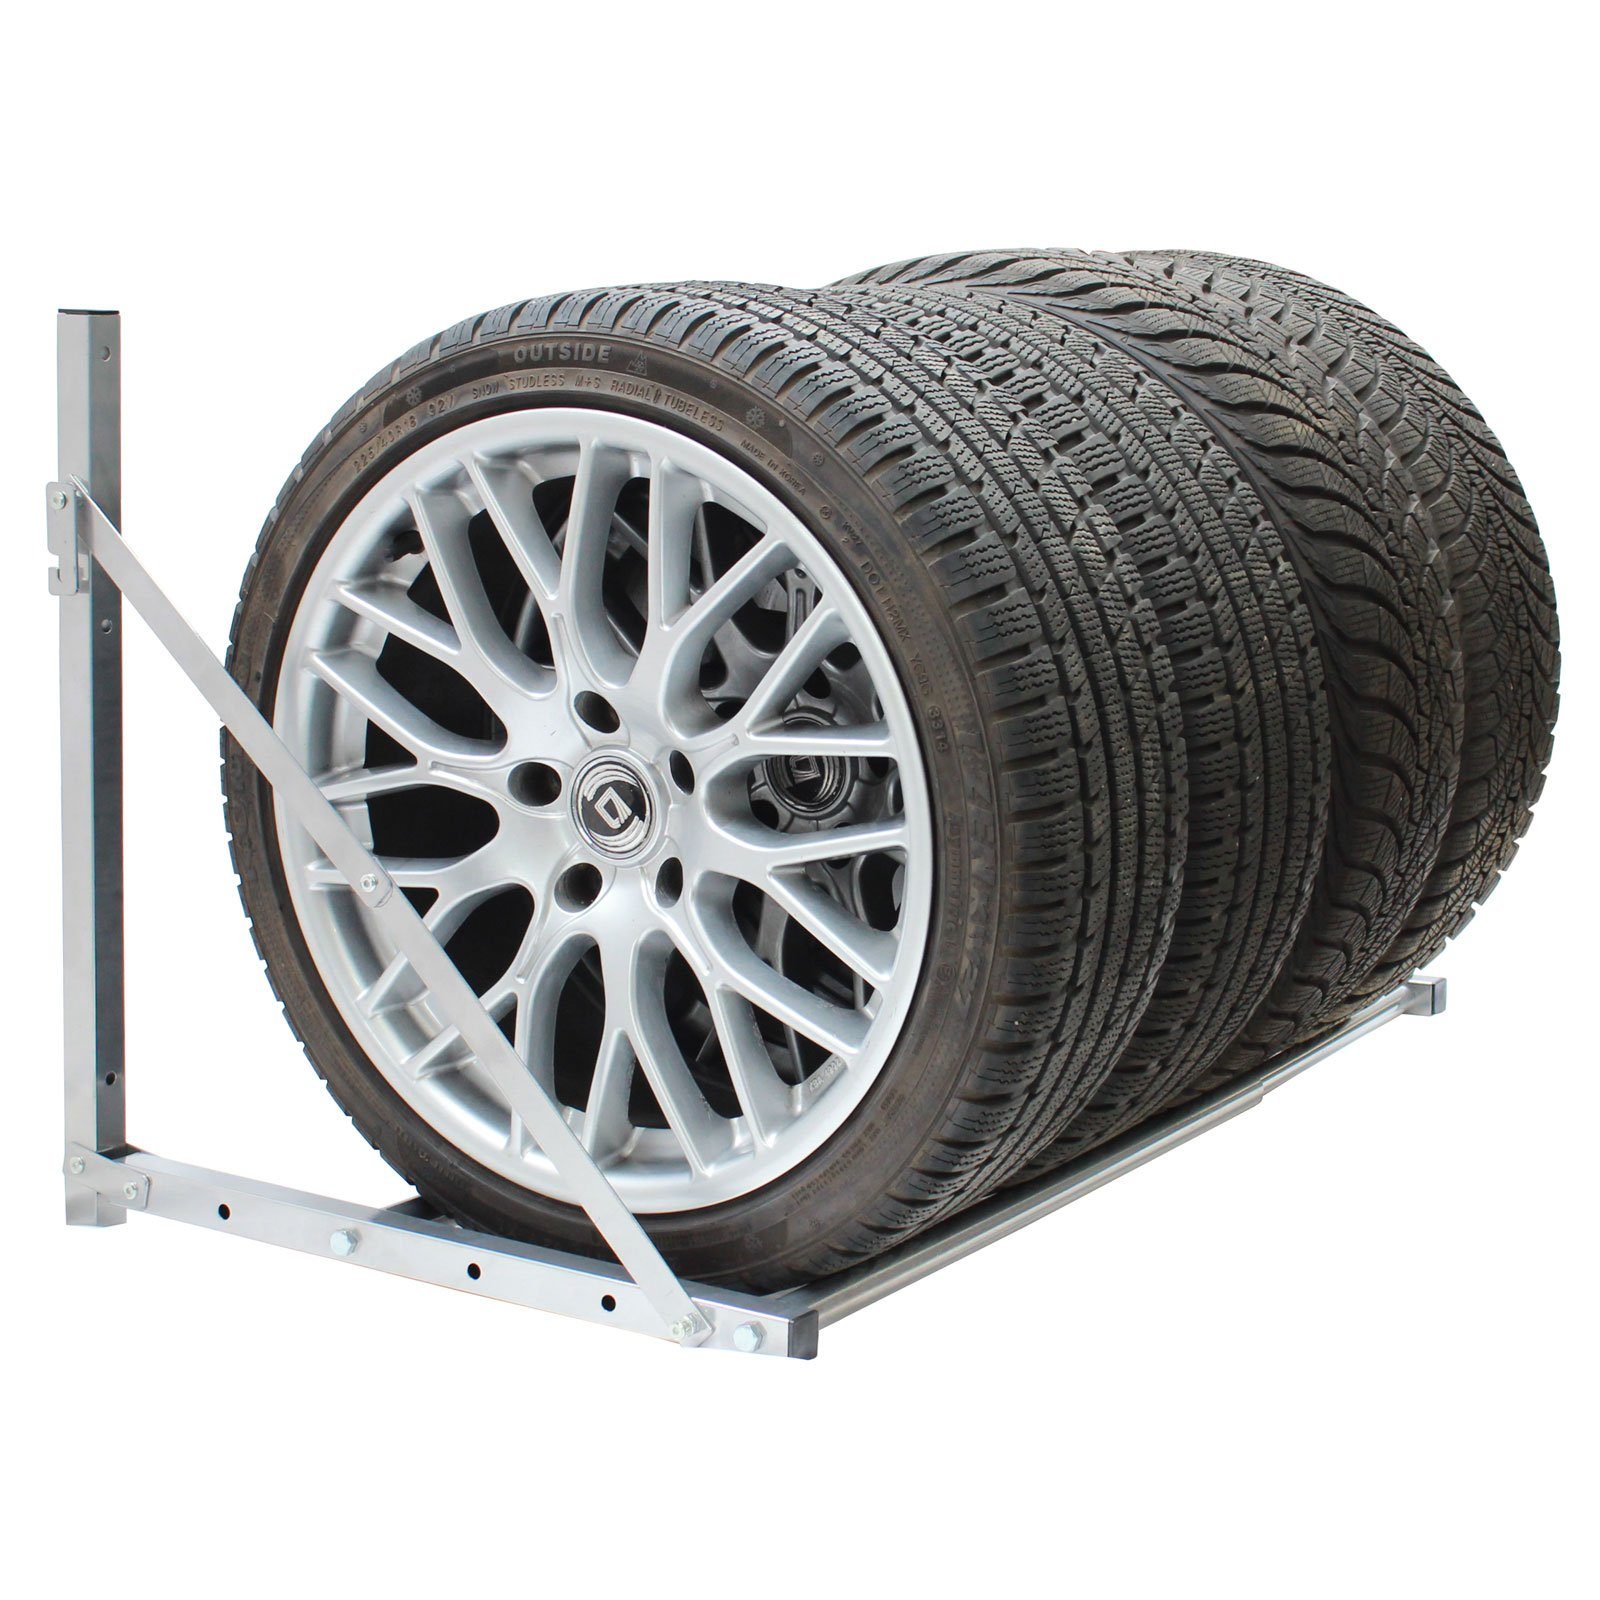 TRUTZHOLM Wandregal Reifenwandhalterung ausziehbar für 4 Räder Traglast 136 kg